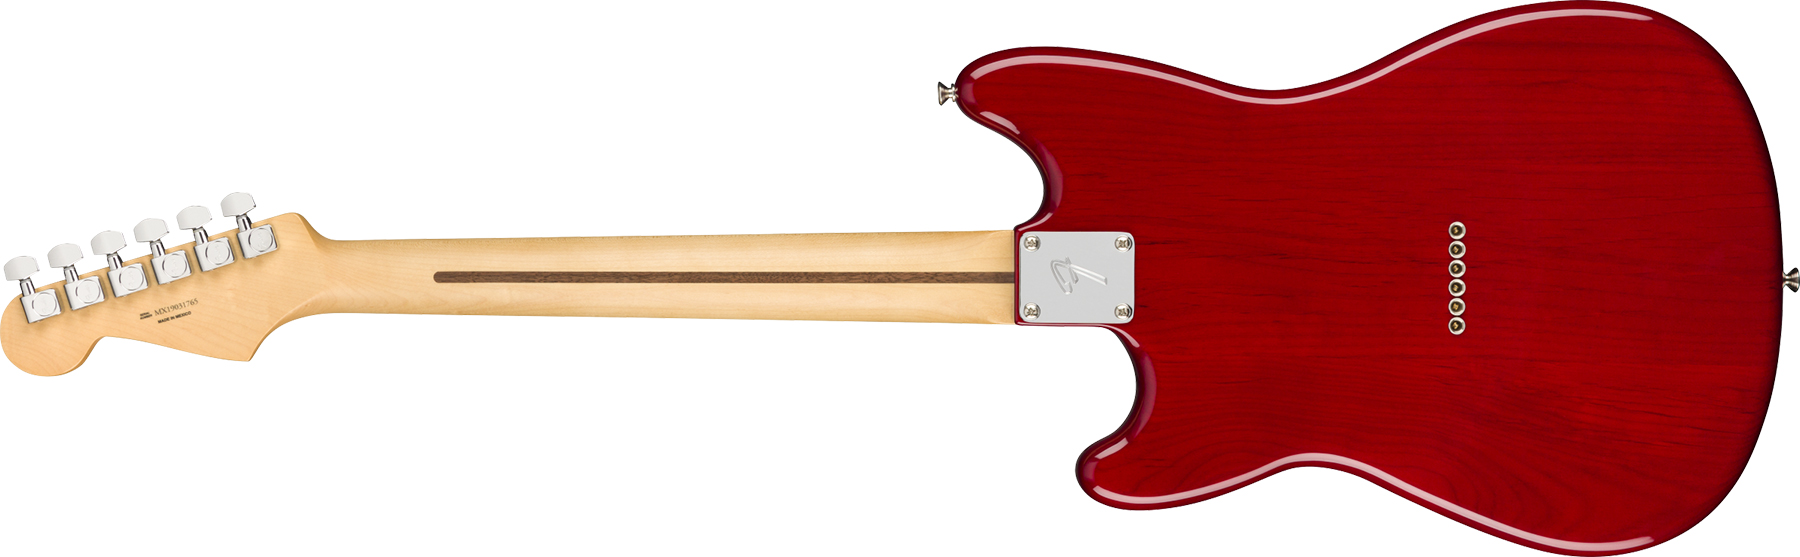 Fender Duo-sonic Player Hs Ht Mn - Crimson Red Transparent - Retro-rock elektrische gitaar - Variation 1